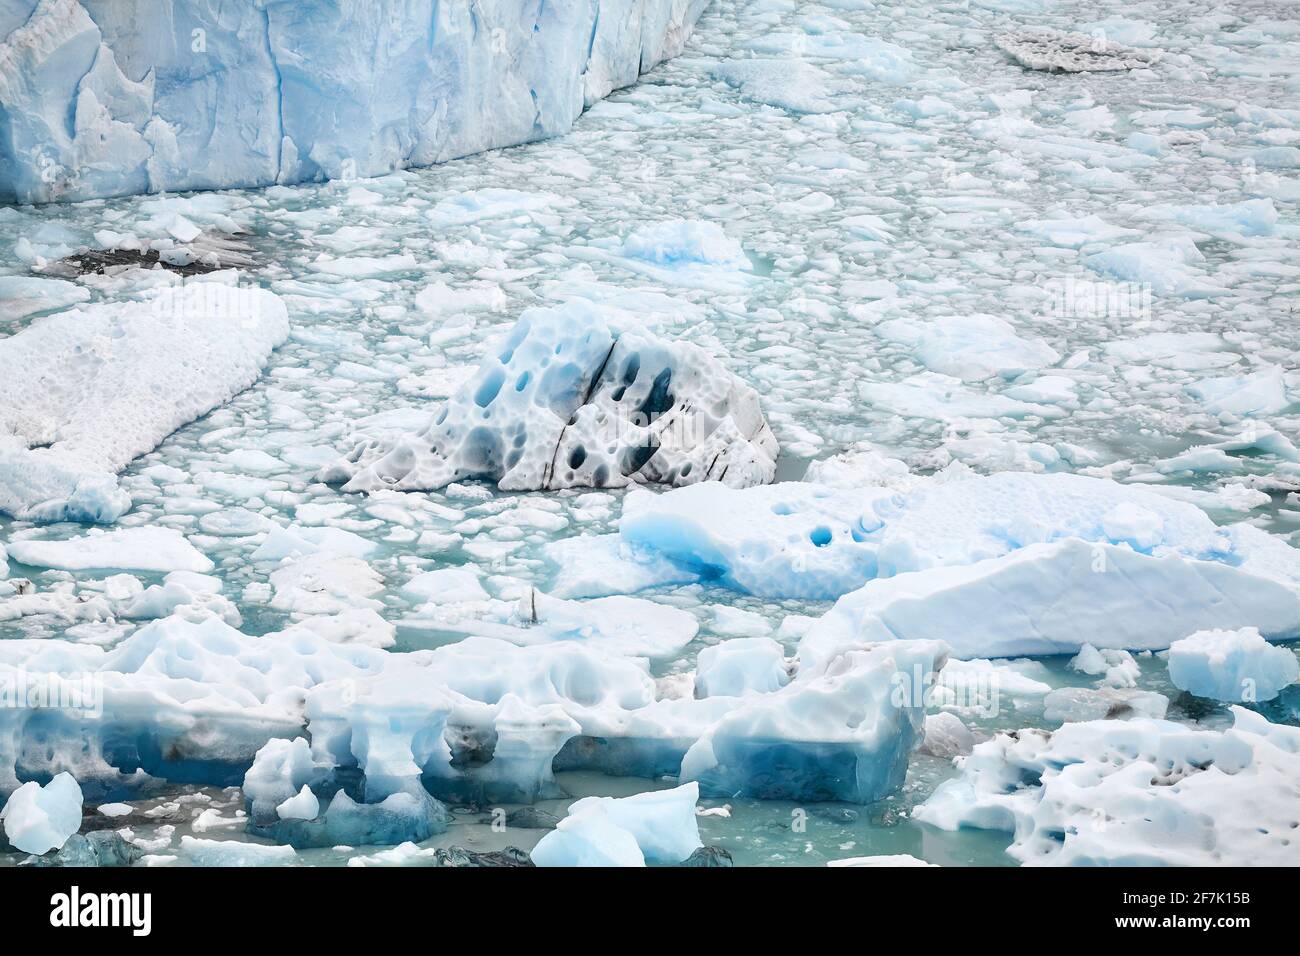 Morceaux de glace provenant de la fonte du glacier dans l'eau. Banque D'Images